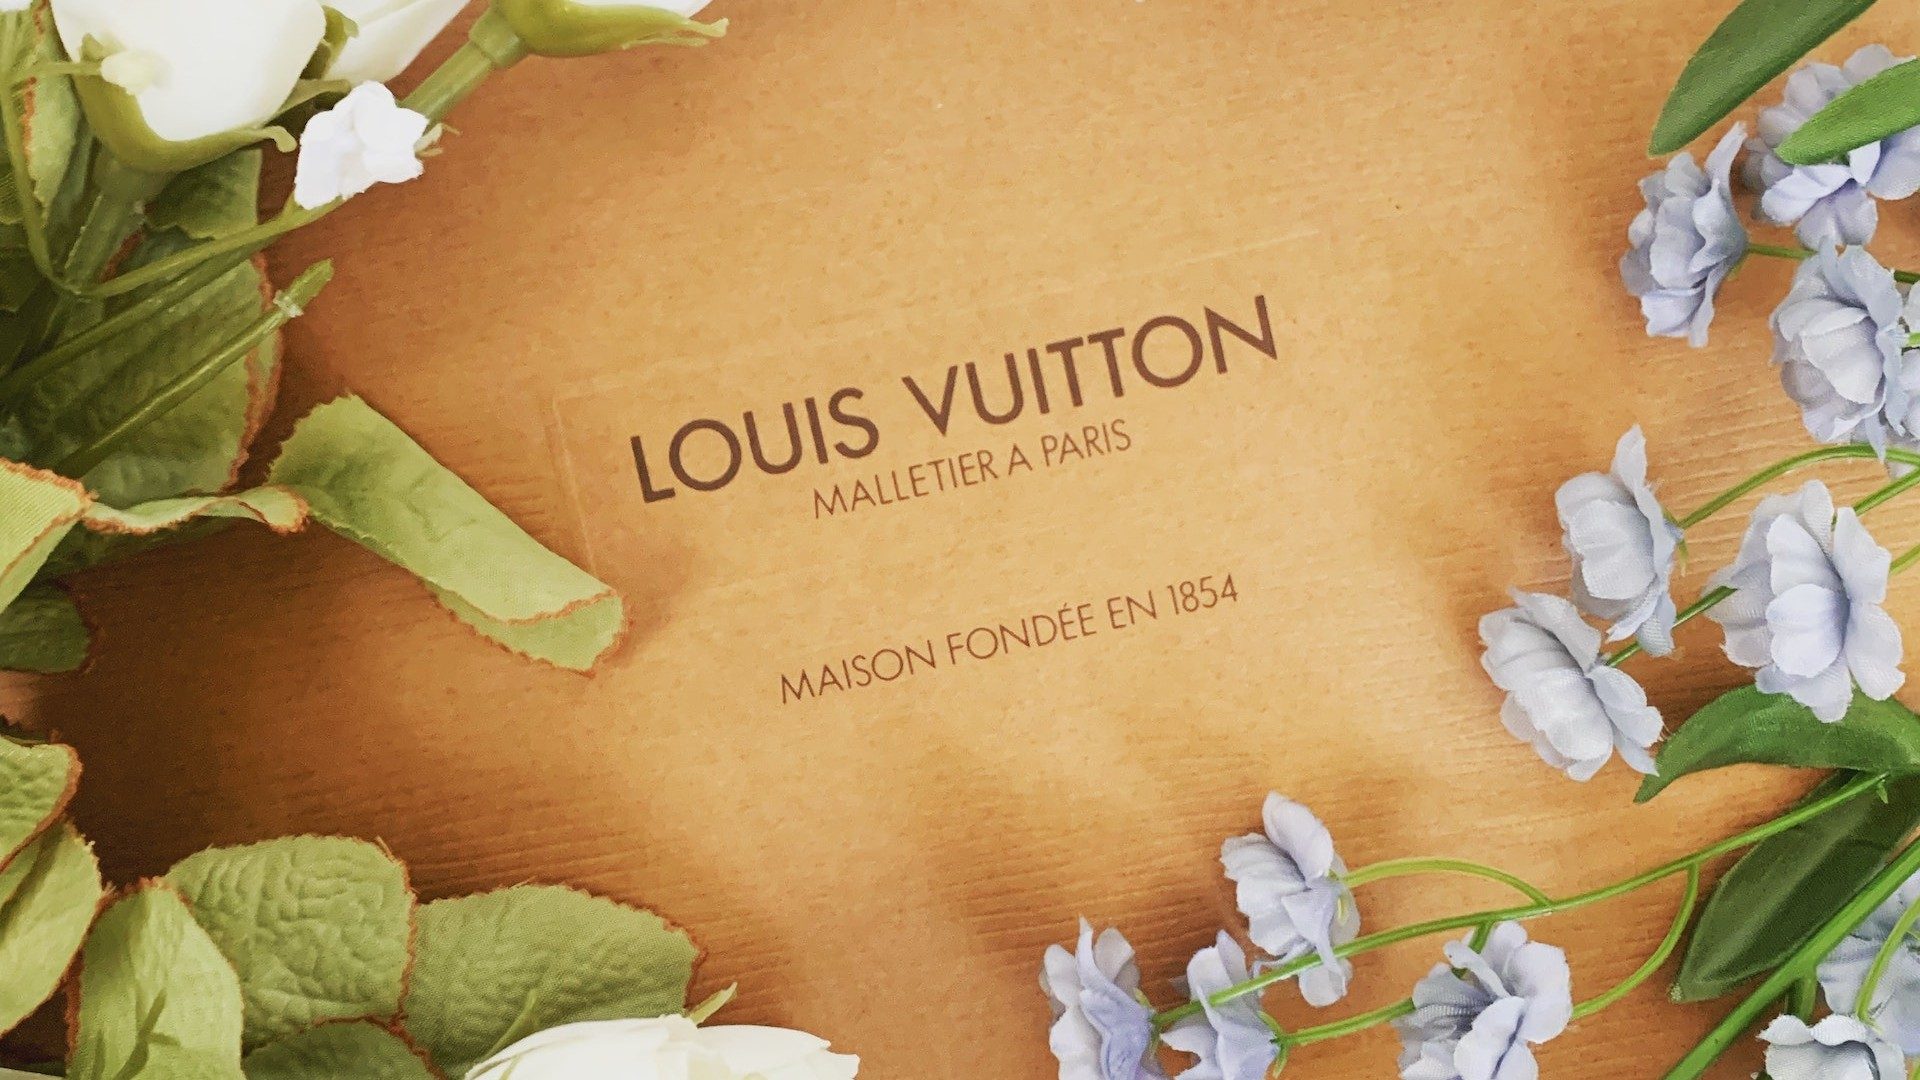 Ein mit Blumen geschmückter Karton mit der Aufschrift "Louis Vuitton", eine Marke von LVMH